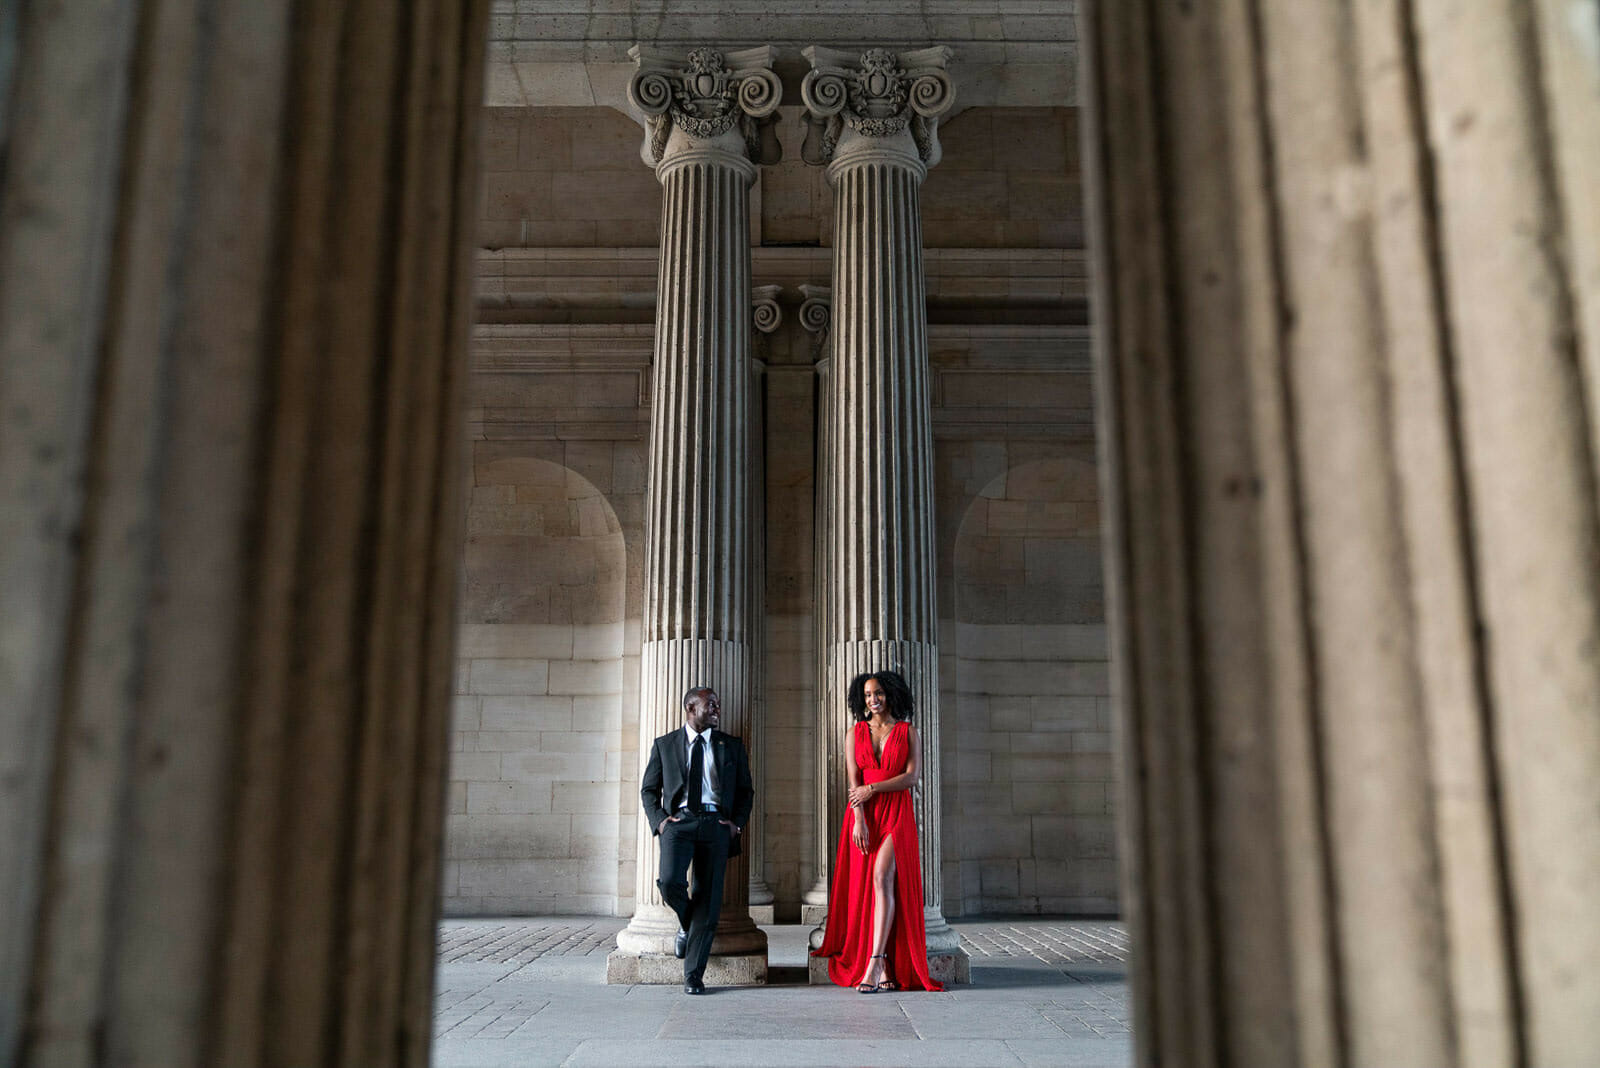 Paris couple photo shoot at the Louvre Museum